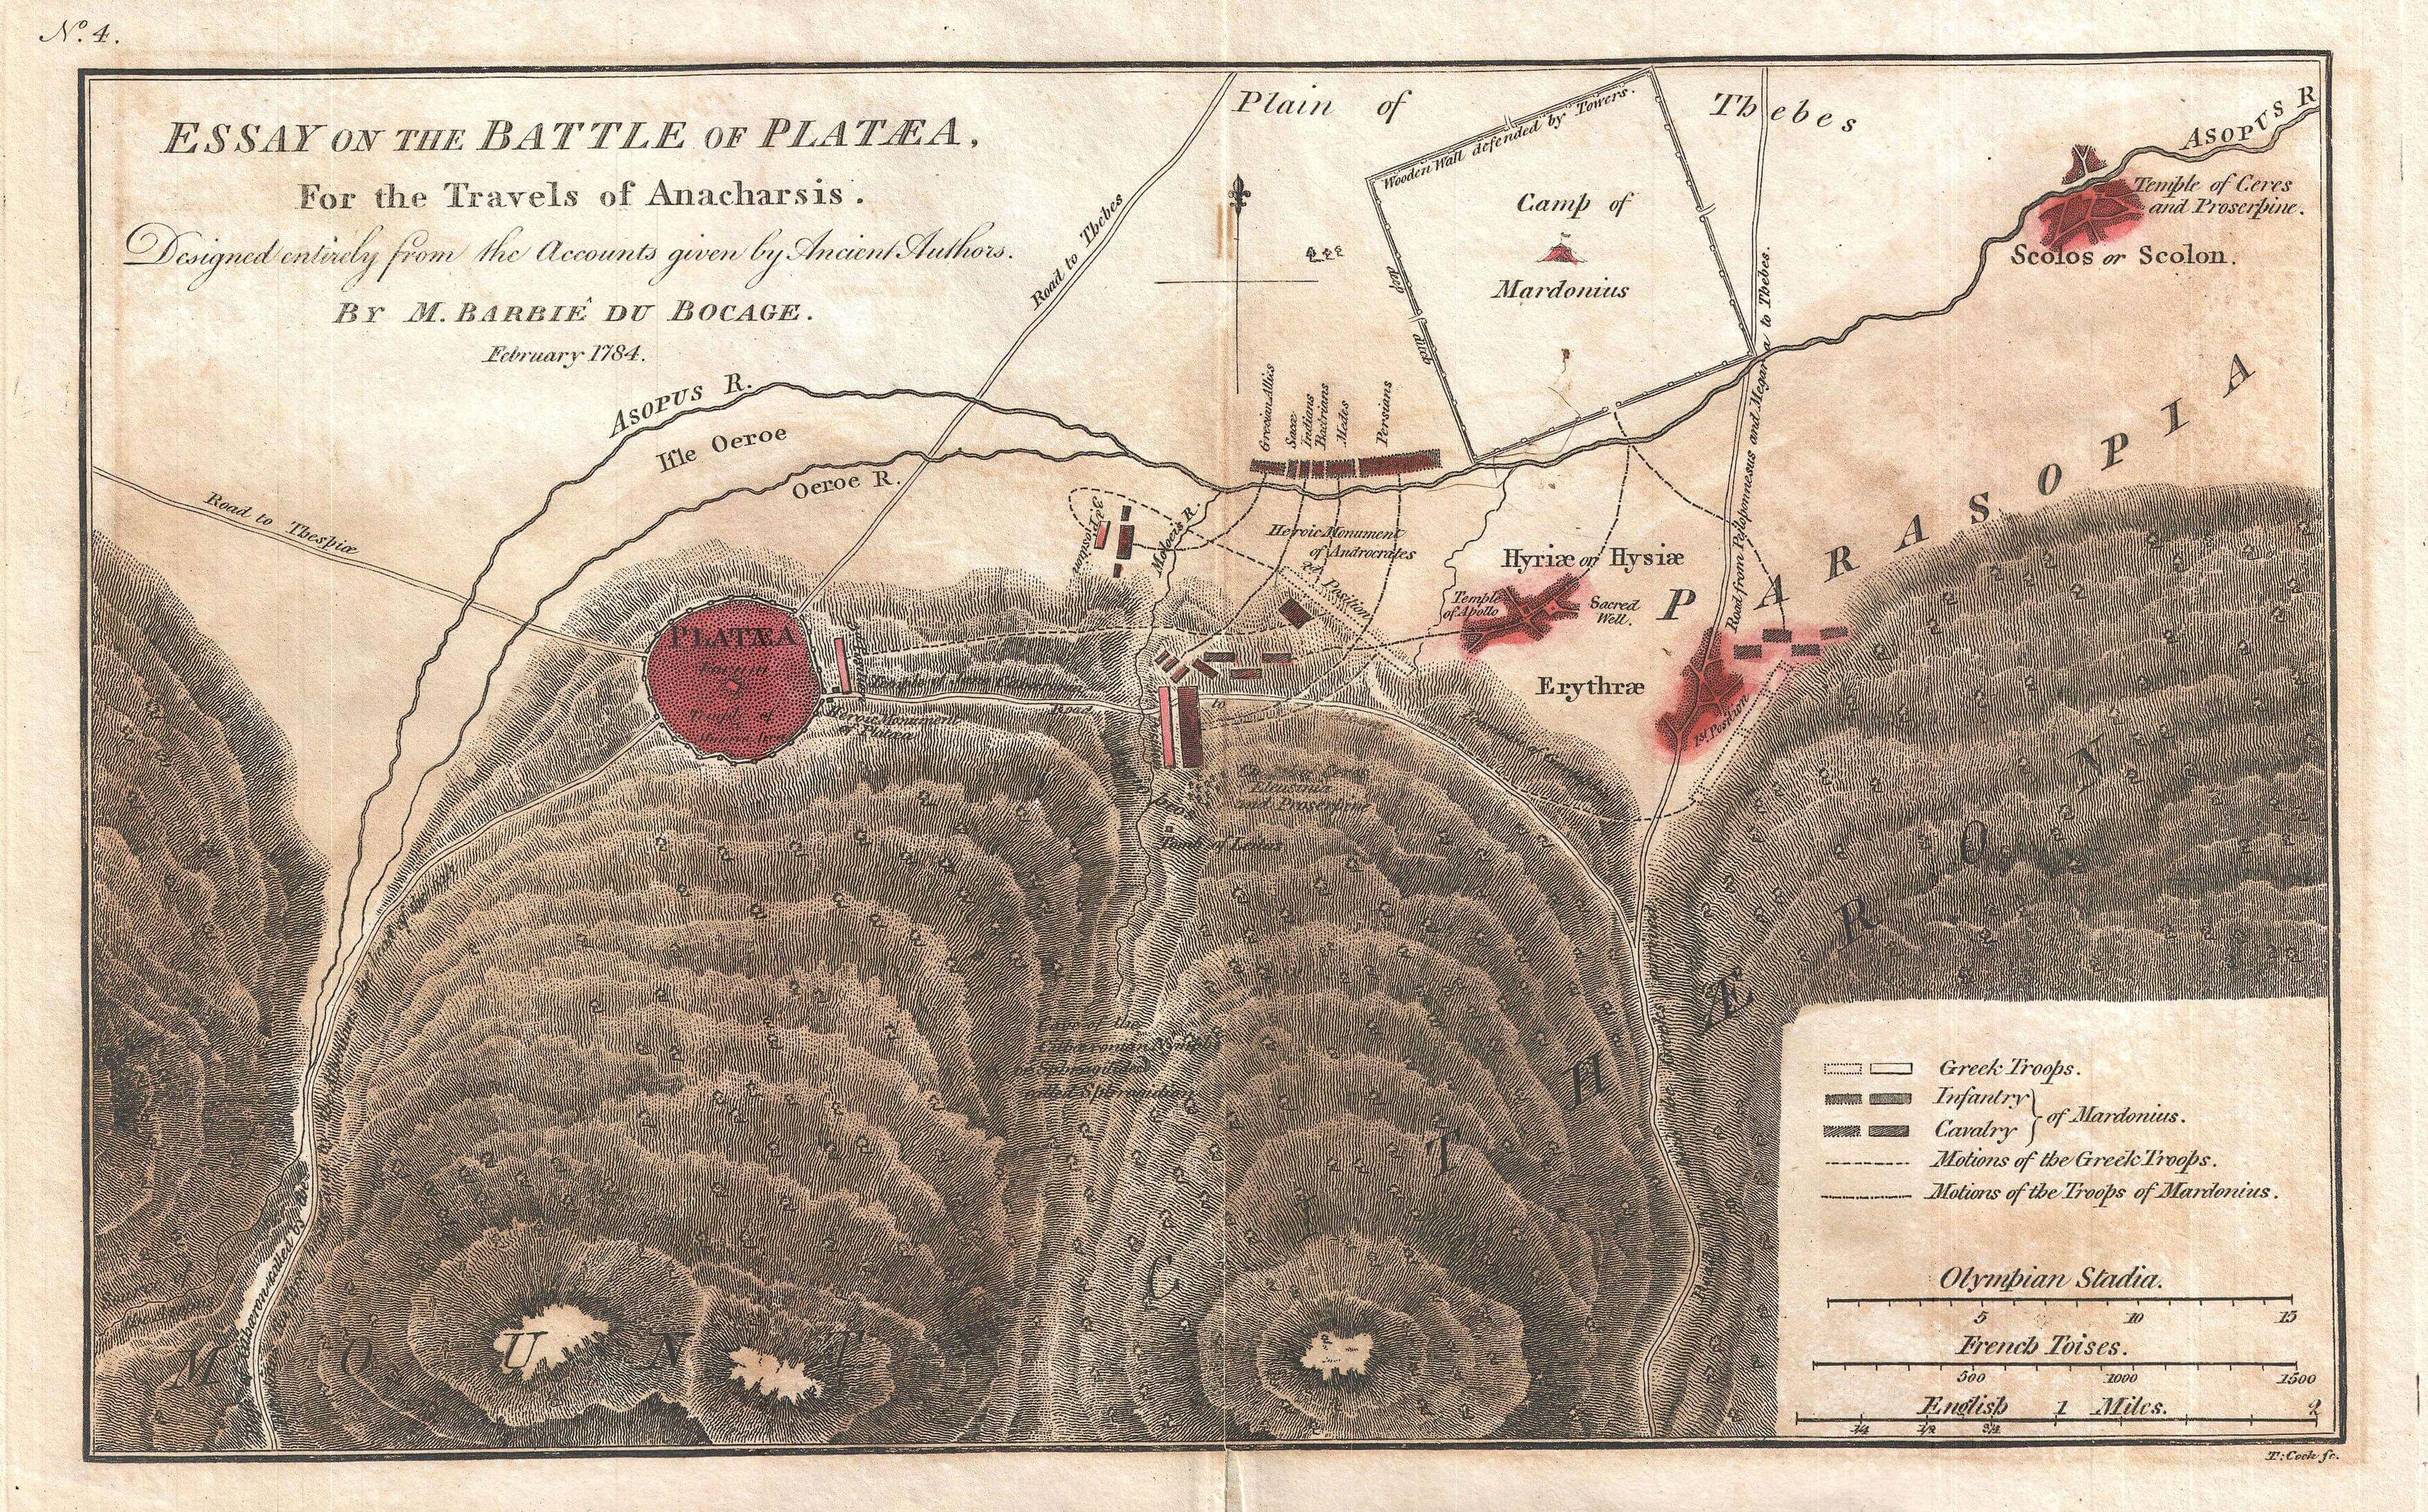 Mapa de la batalla de Platea elaborado en 1784 por el cartógrafo Jean-Denis Barbié du Bocage.